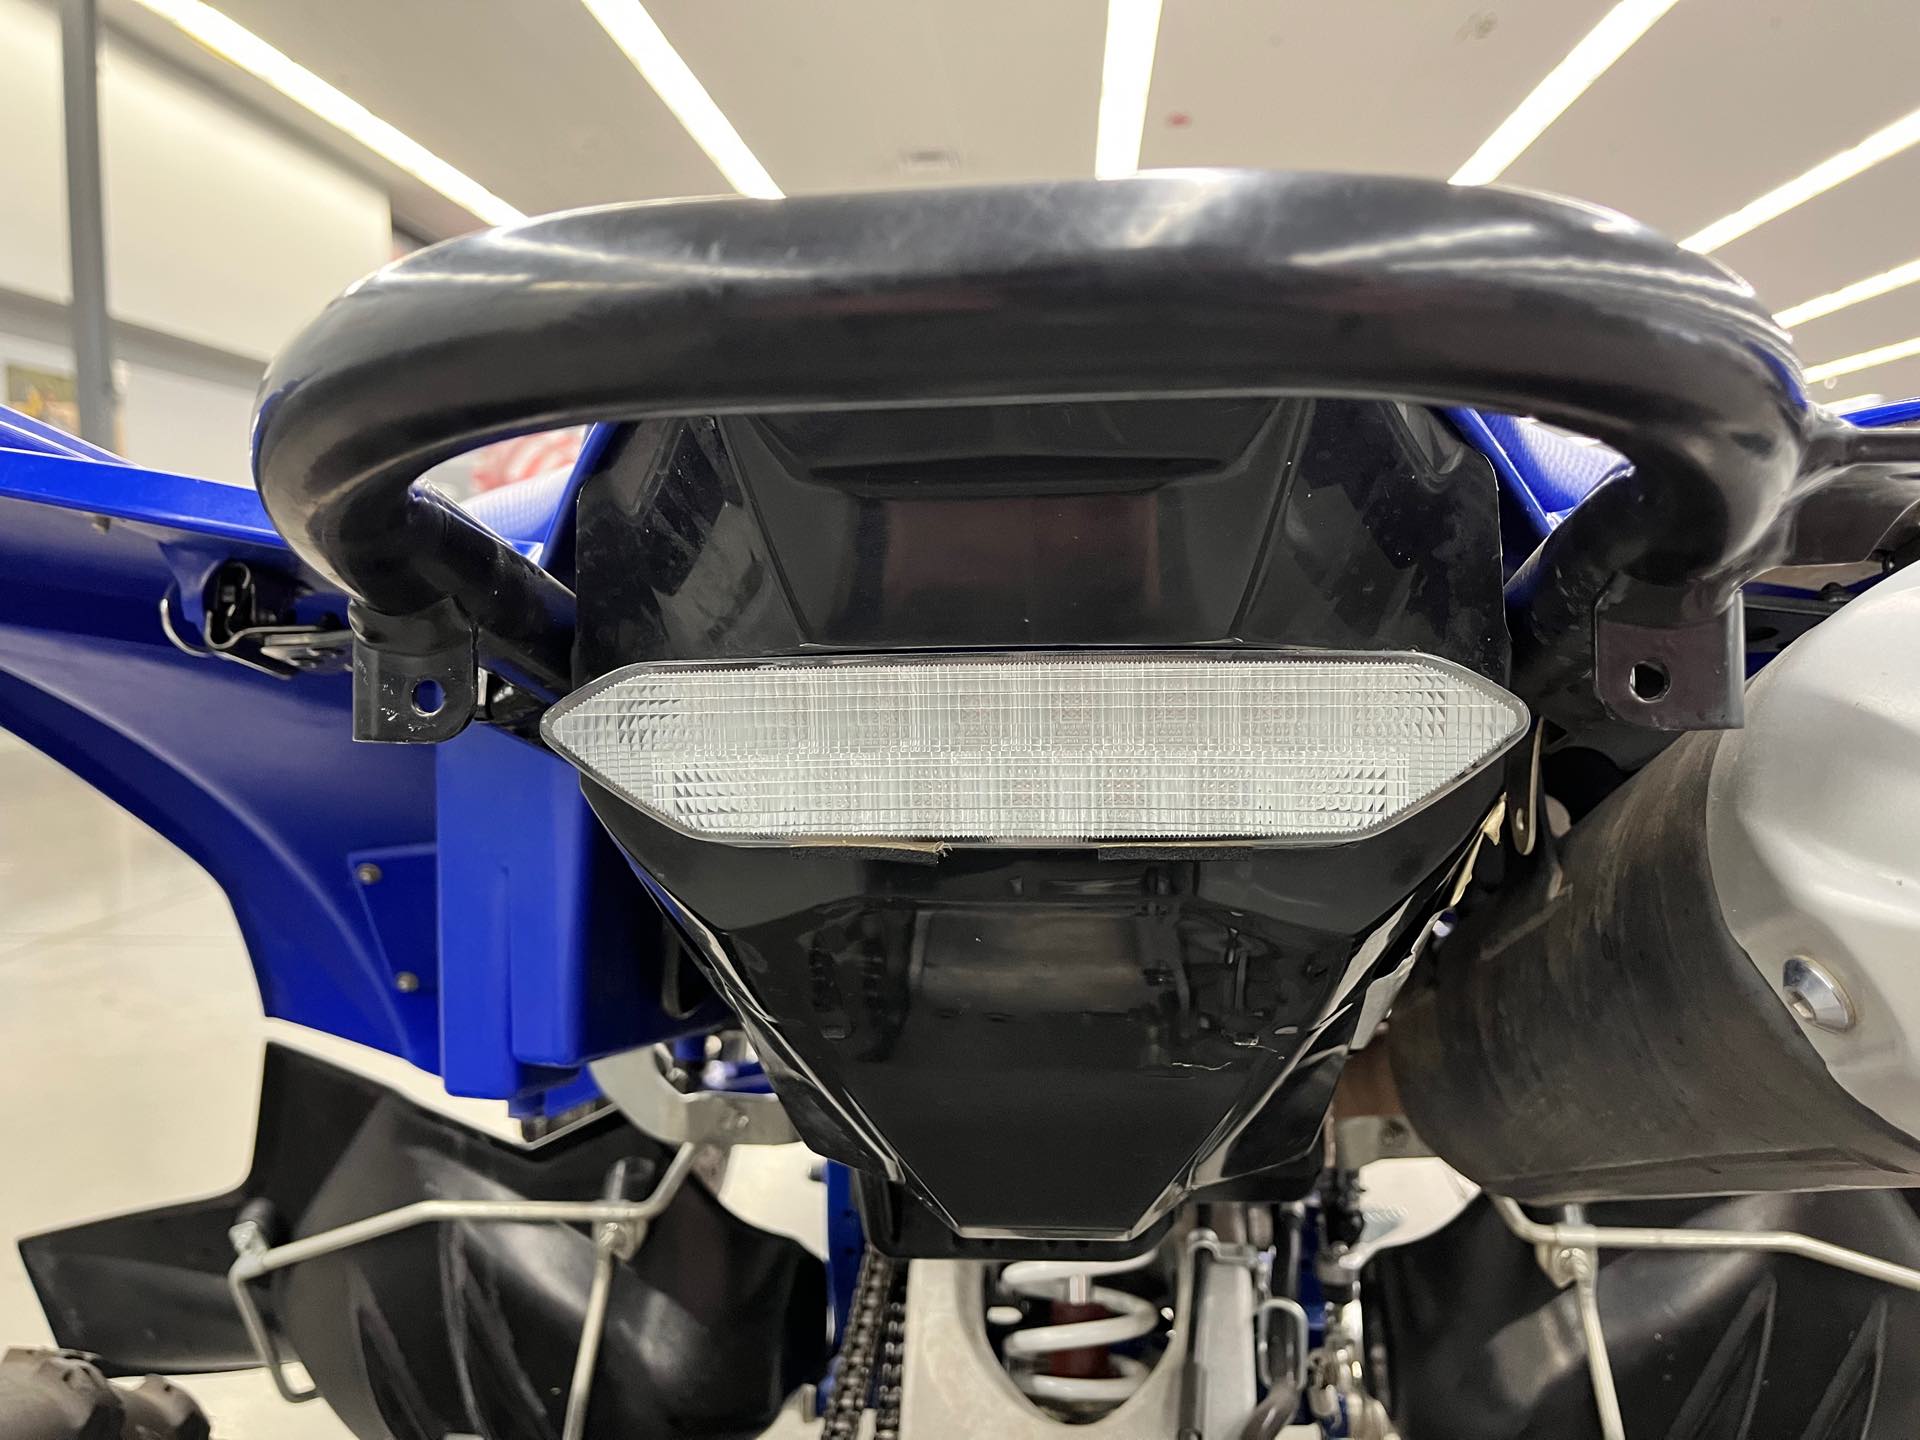 2018 Yamaha YFZ 450R at Aces Motorcycles - Denver